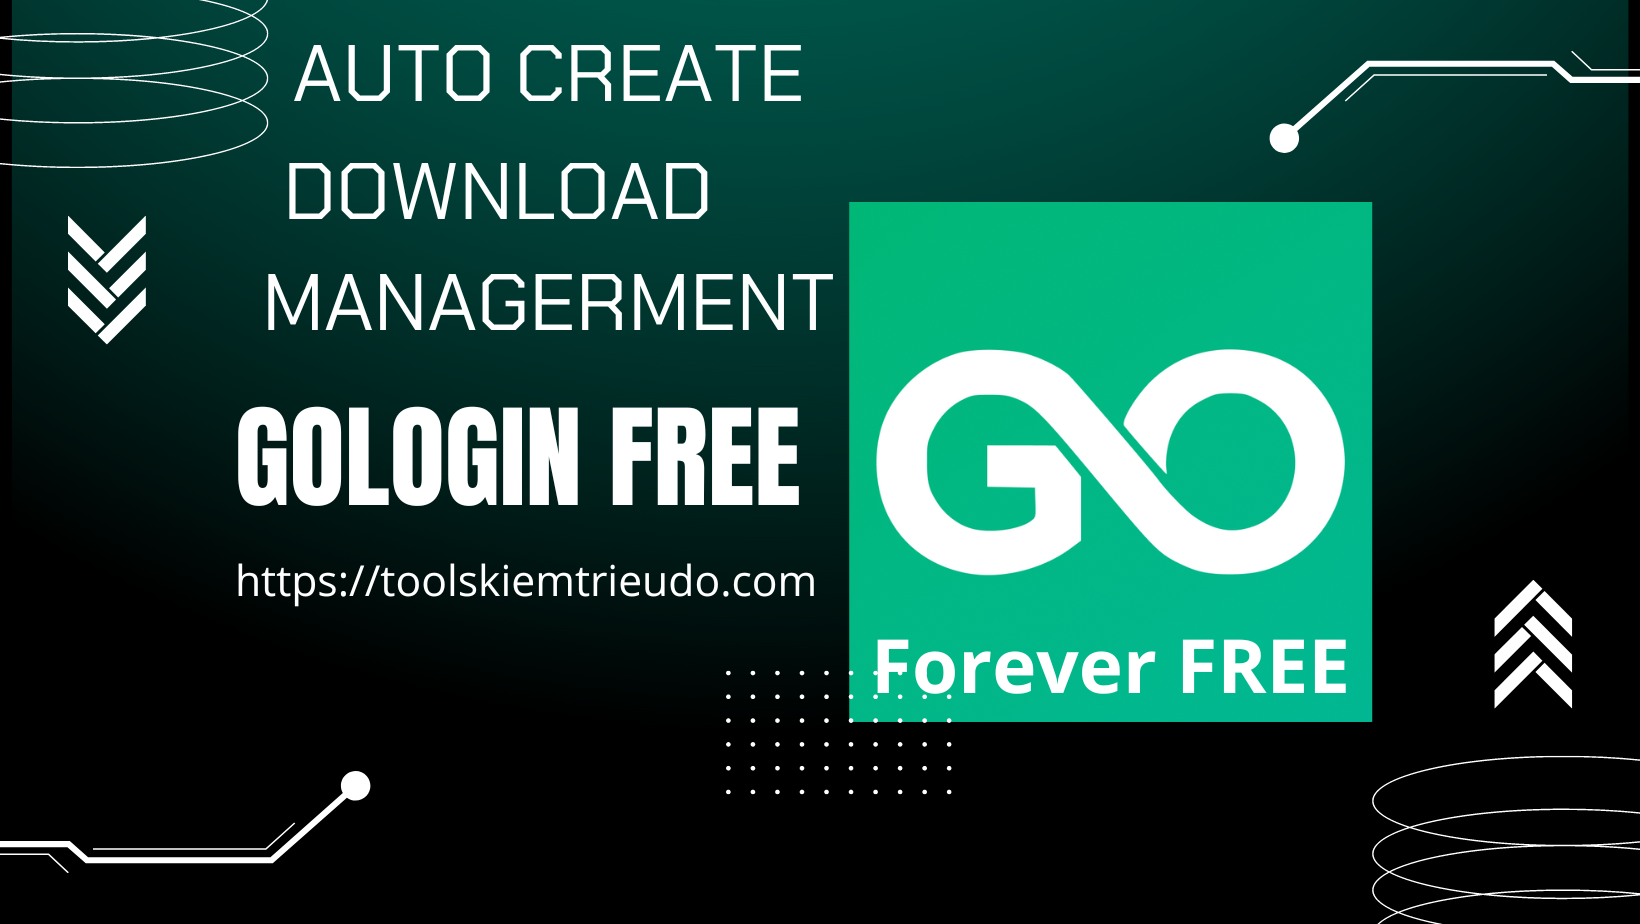 Tool quản lý profiles Gologin offline miễn phí, tự động tạo profile gologin, tự động download profiles gologin và quản lý